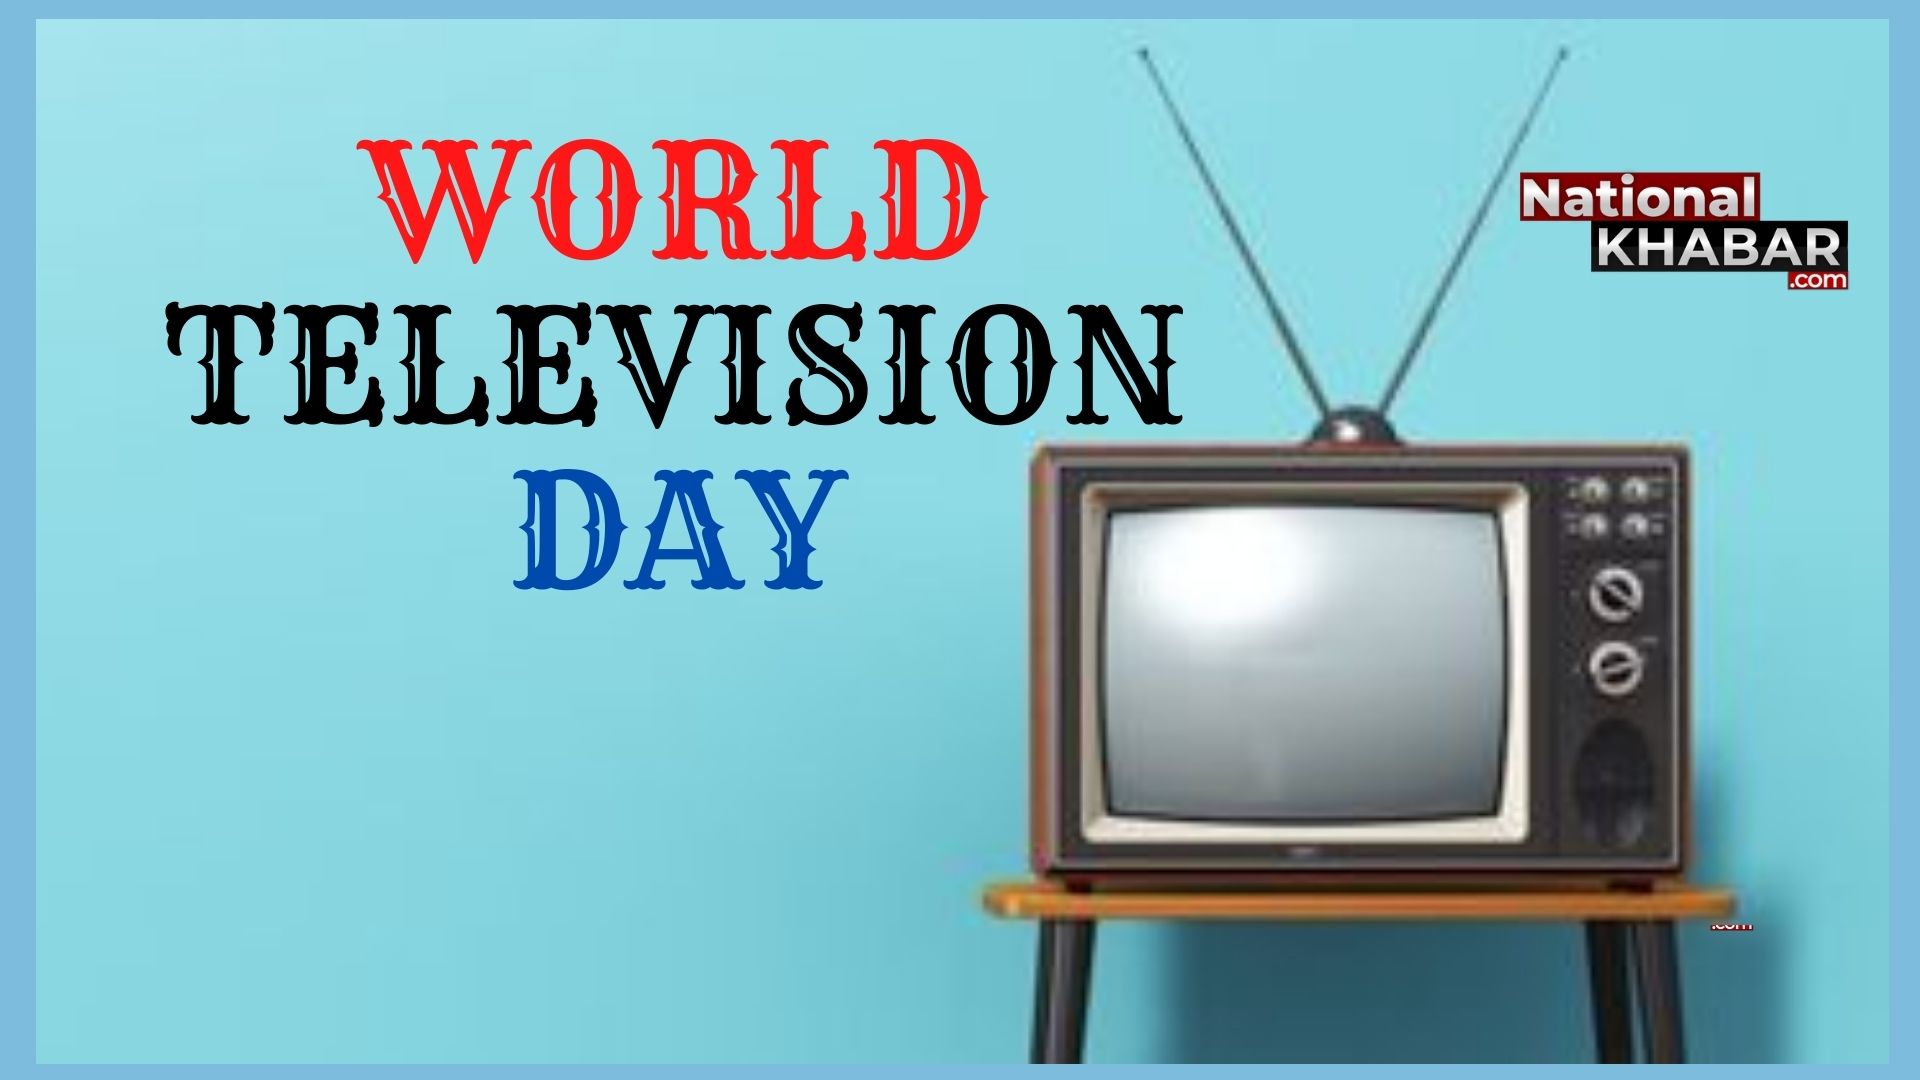 21 नवंबर को मनाया जाता है World Television Day, जानिए इस दिन से जुड़ा इतिहास और महत्वपूर्ण बातें